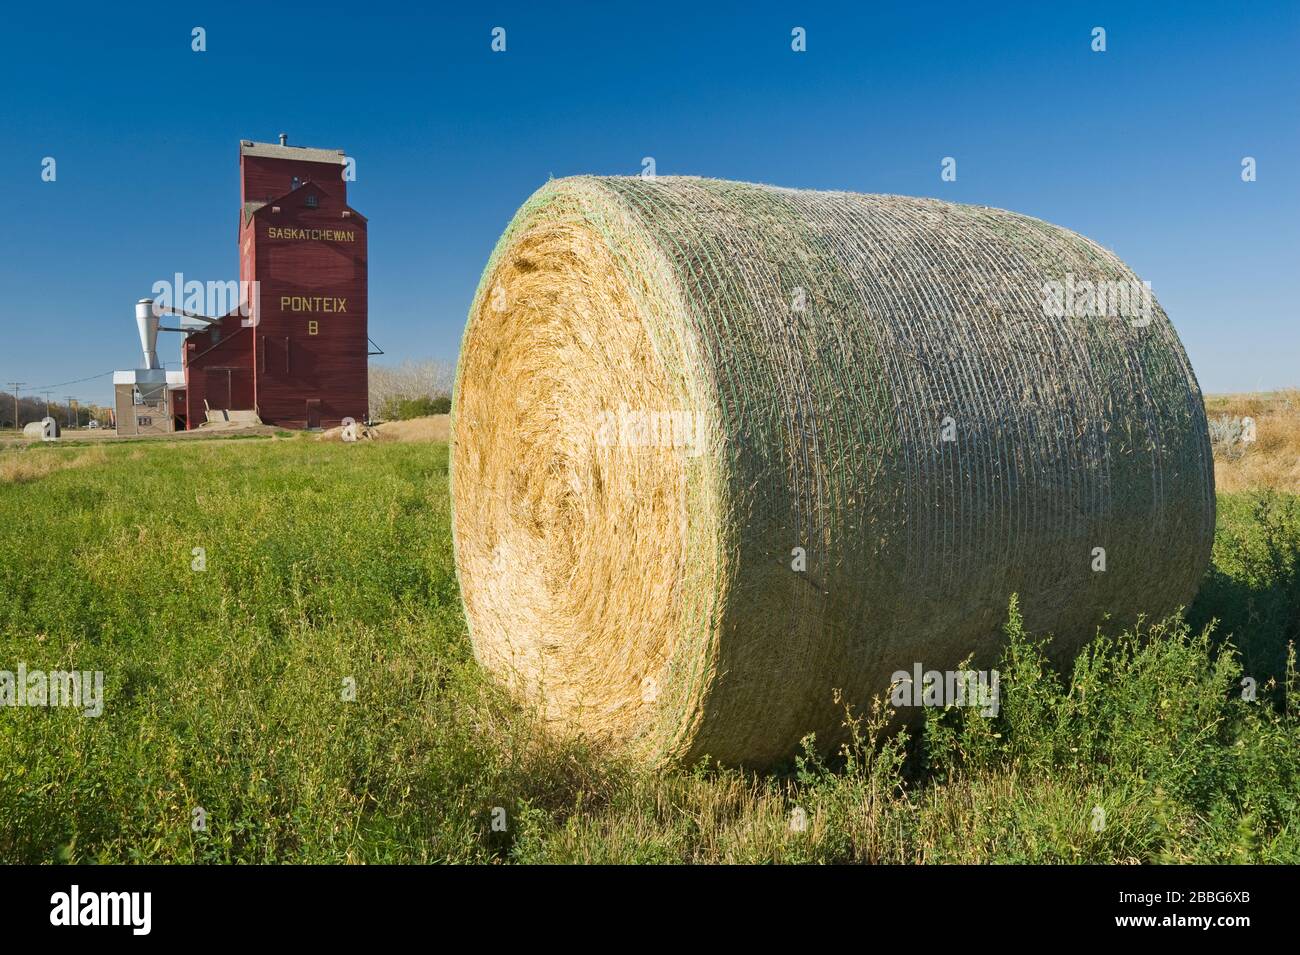 round alfalfa bales and grain elevator, Ponteix, Saskatchewan, Canada Stock Photo